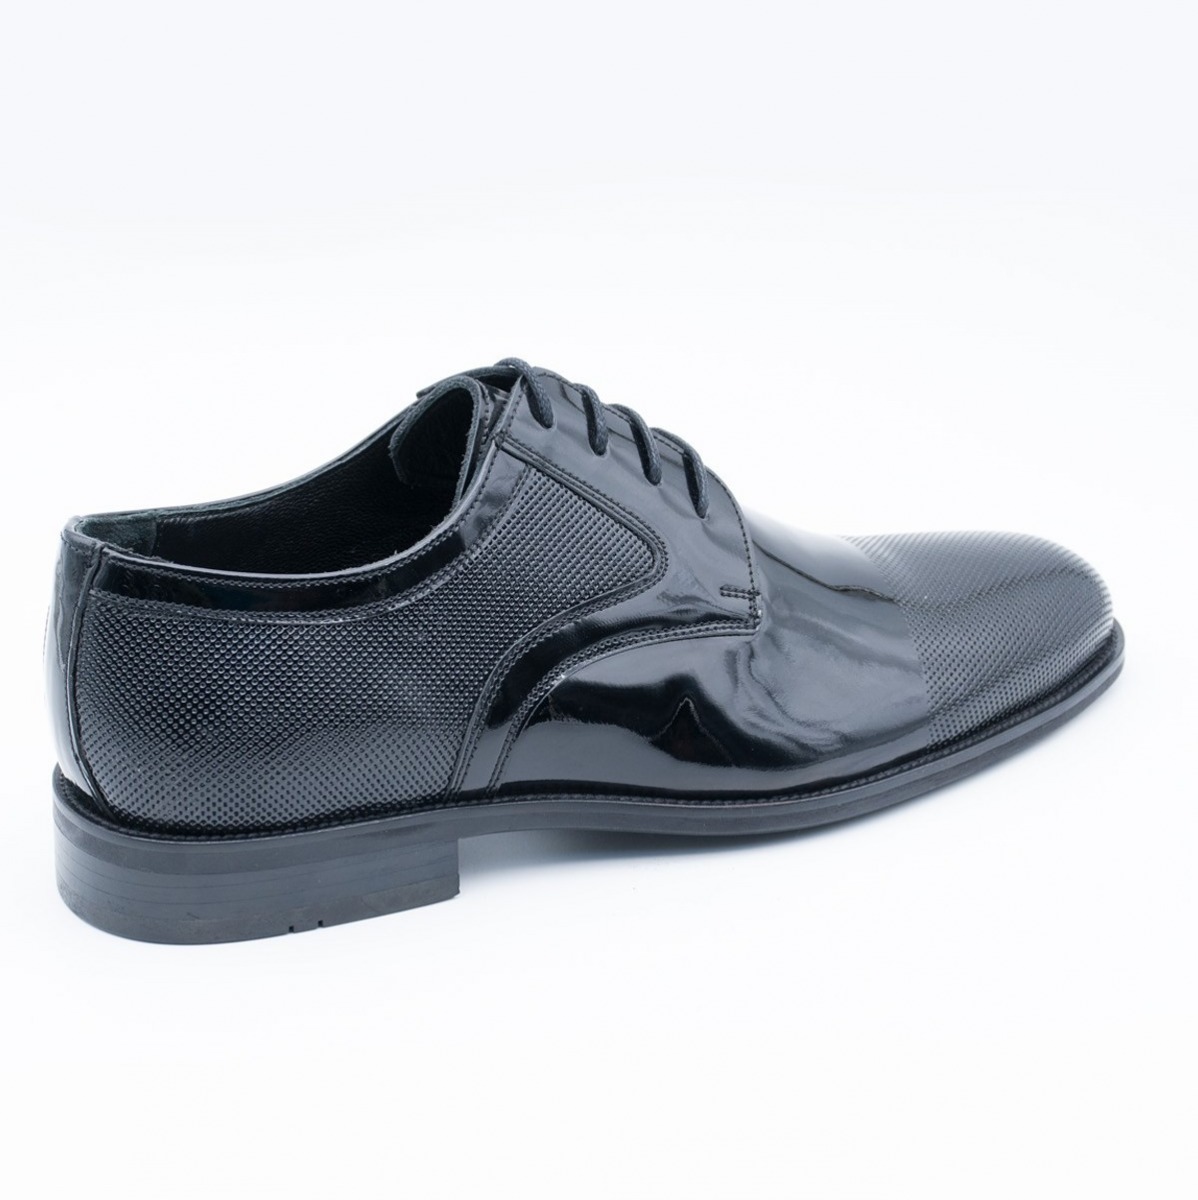 Flo Erkek Deri Klasik Ayakkabı İ19523-1 M 1000 SİYAH RUGAN. 2